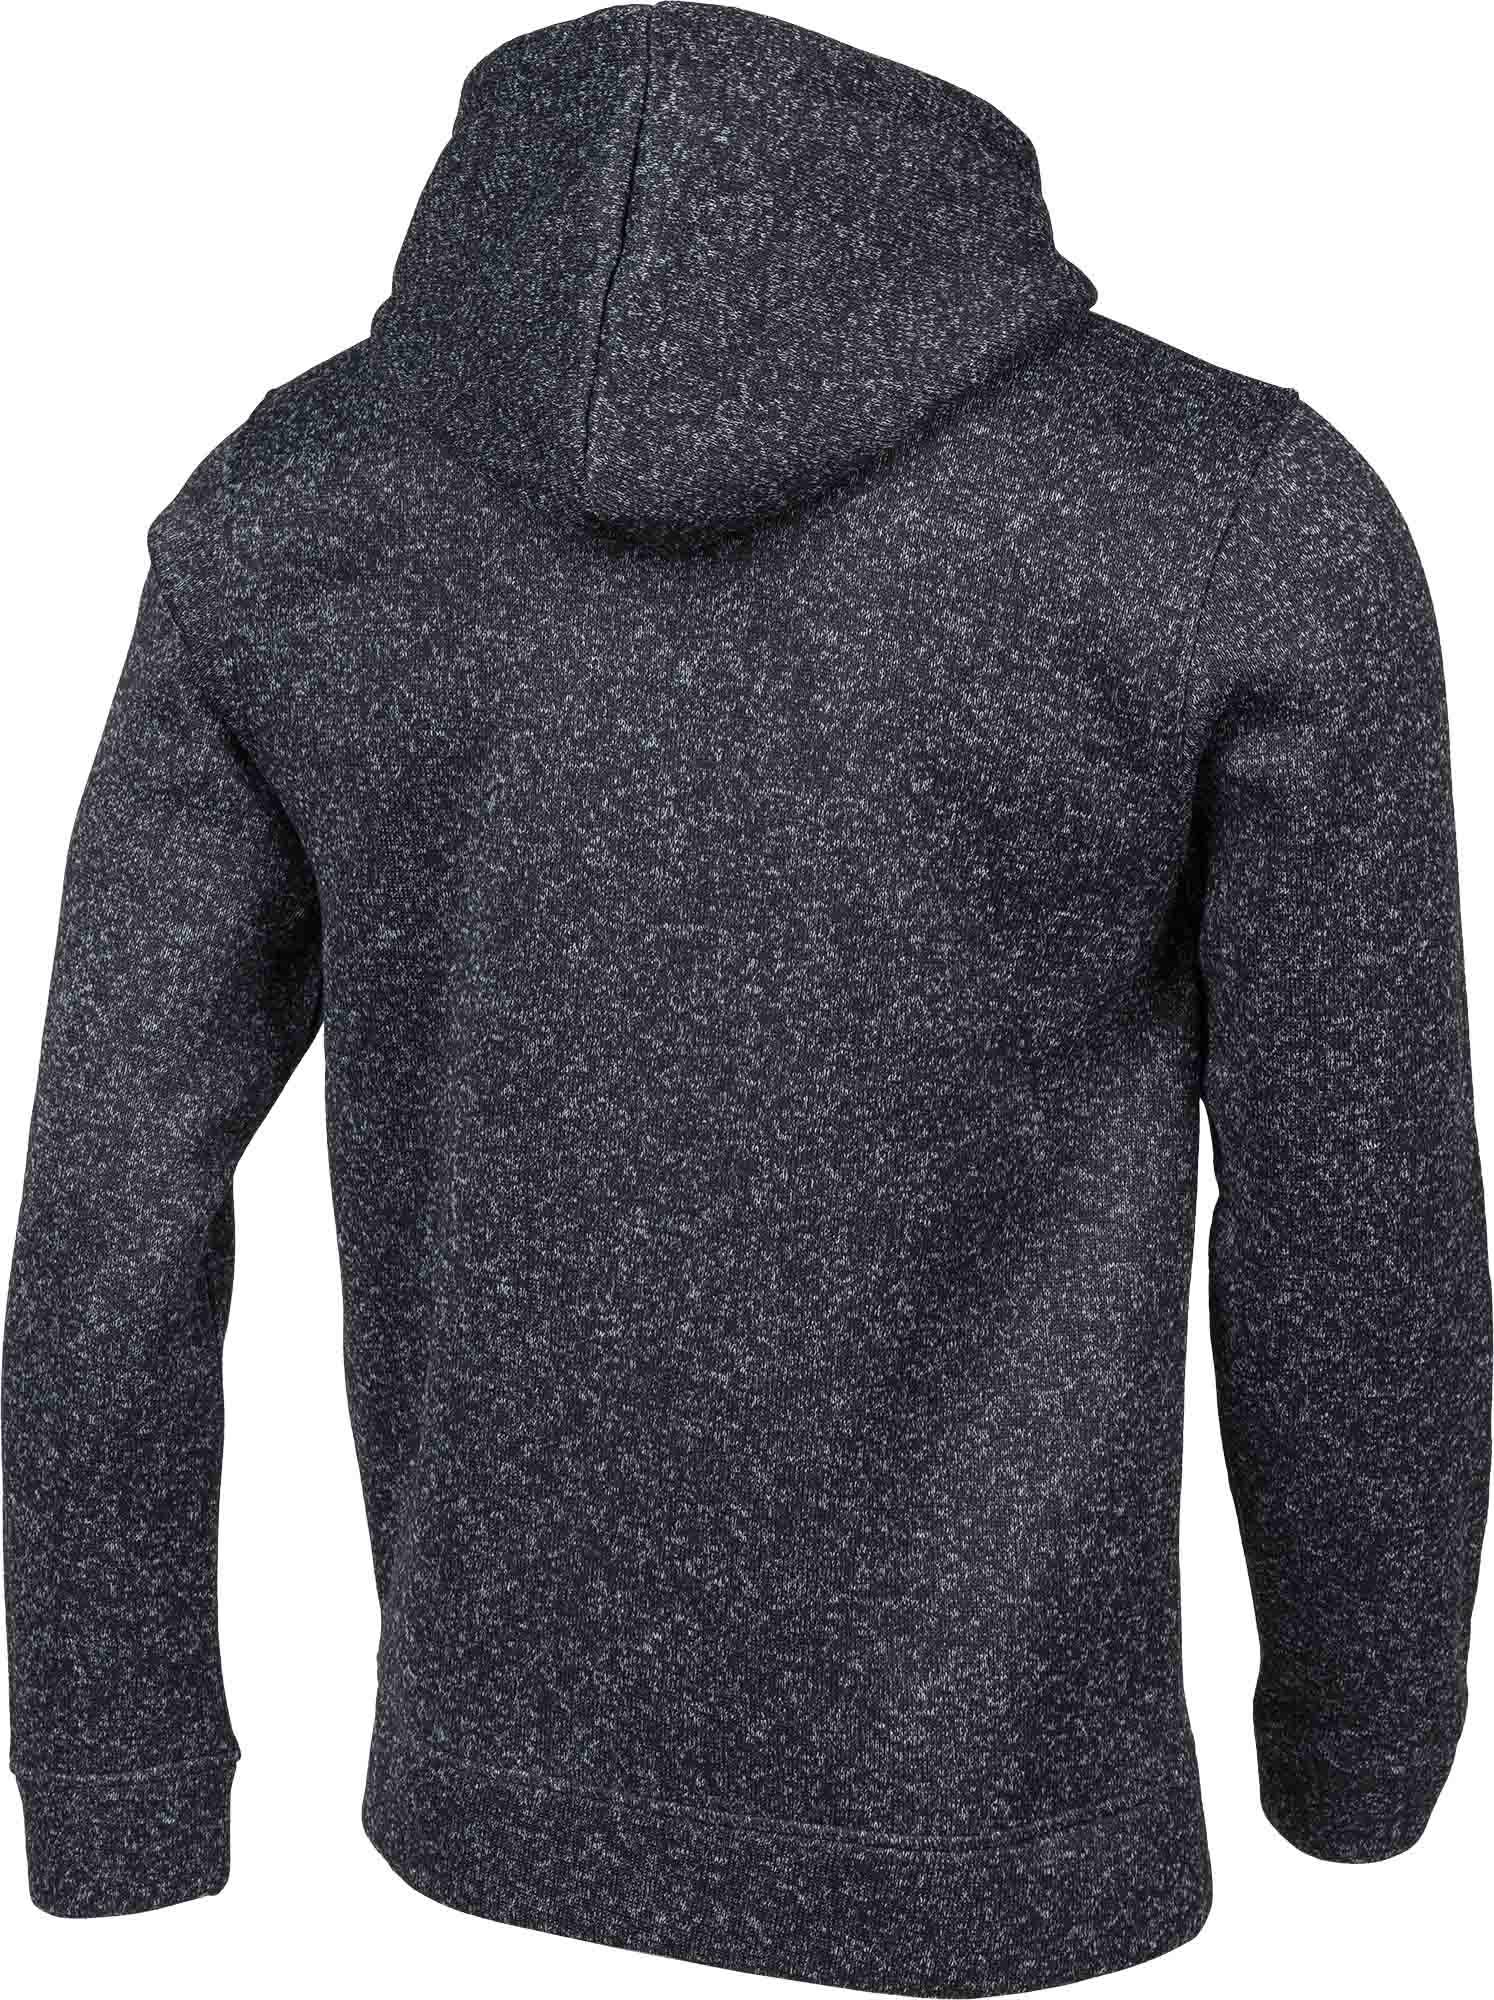 Hanorac bărbătesc cu aspect de pulover